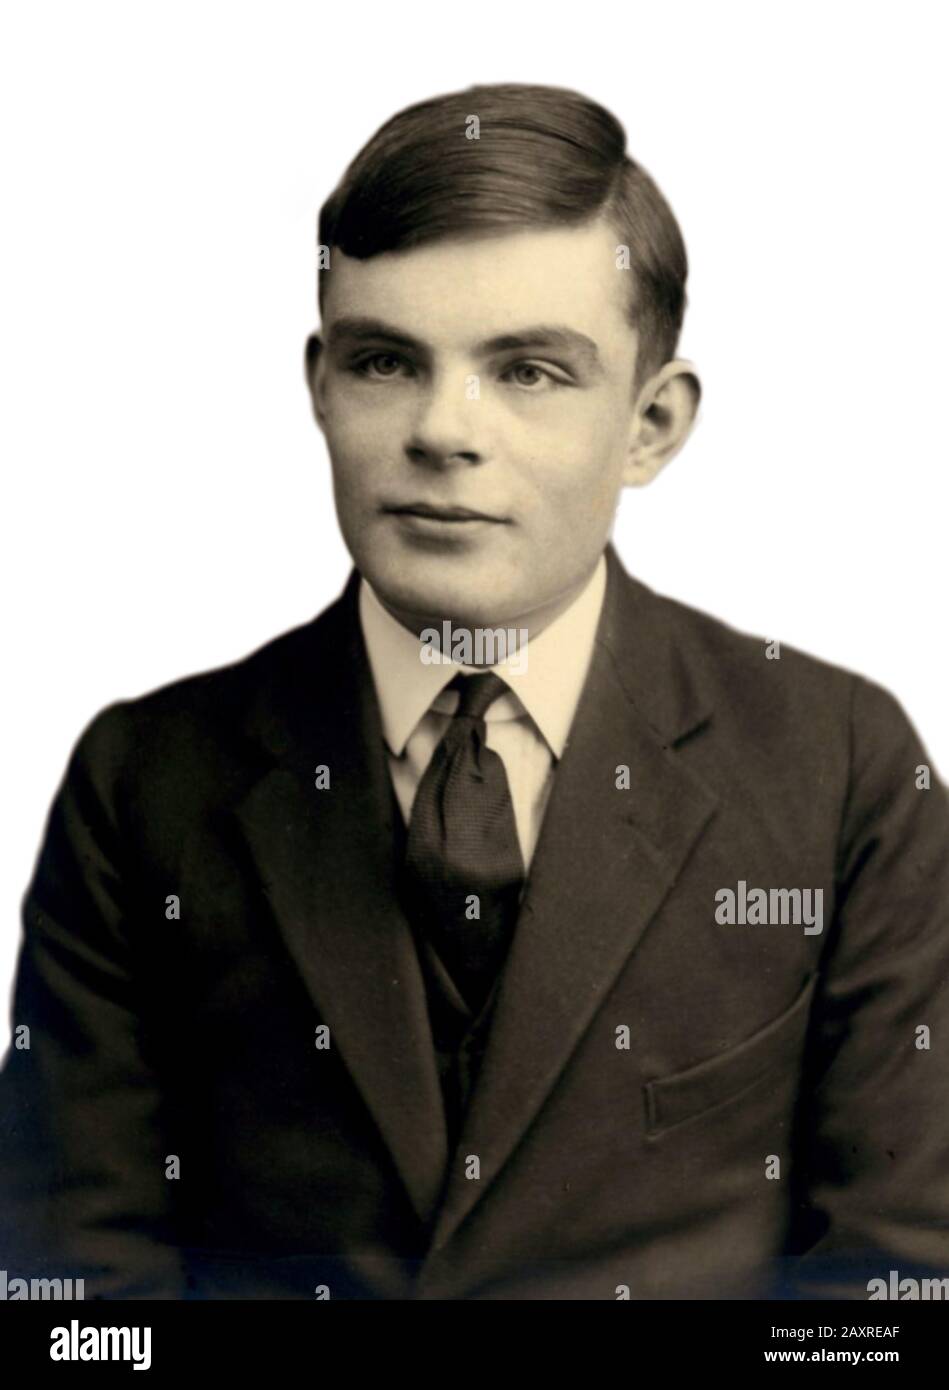 1930 ca., GREAT BRITAIN : The british mathematician ALAN Mathison TURING ( 1912 - 1954 ) when was a young boy, inventor of decoder machine for ENIGMA CODE during the World War II when Nazi U-Boat blocked the Britain . - COMPUTER - WAR HERO - EROE DI GUERRA - MATEMATICO - MATEMATICA - INTELLIGENZA ARTIFICIALE - LGBT VICTIM - GAY - HOMOSEXUAL - HOMOSEXUALITY - omosessuale - omosessualità - portrait - ritratto - tie - cravatta - collar - colletto - celebrità da giovane giovani ragazzo - celebrity celebrities when was young ---  Archivio GBB Stock Photo